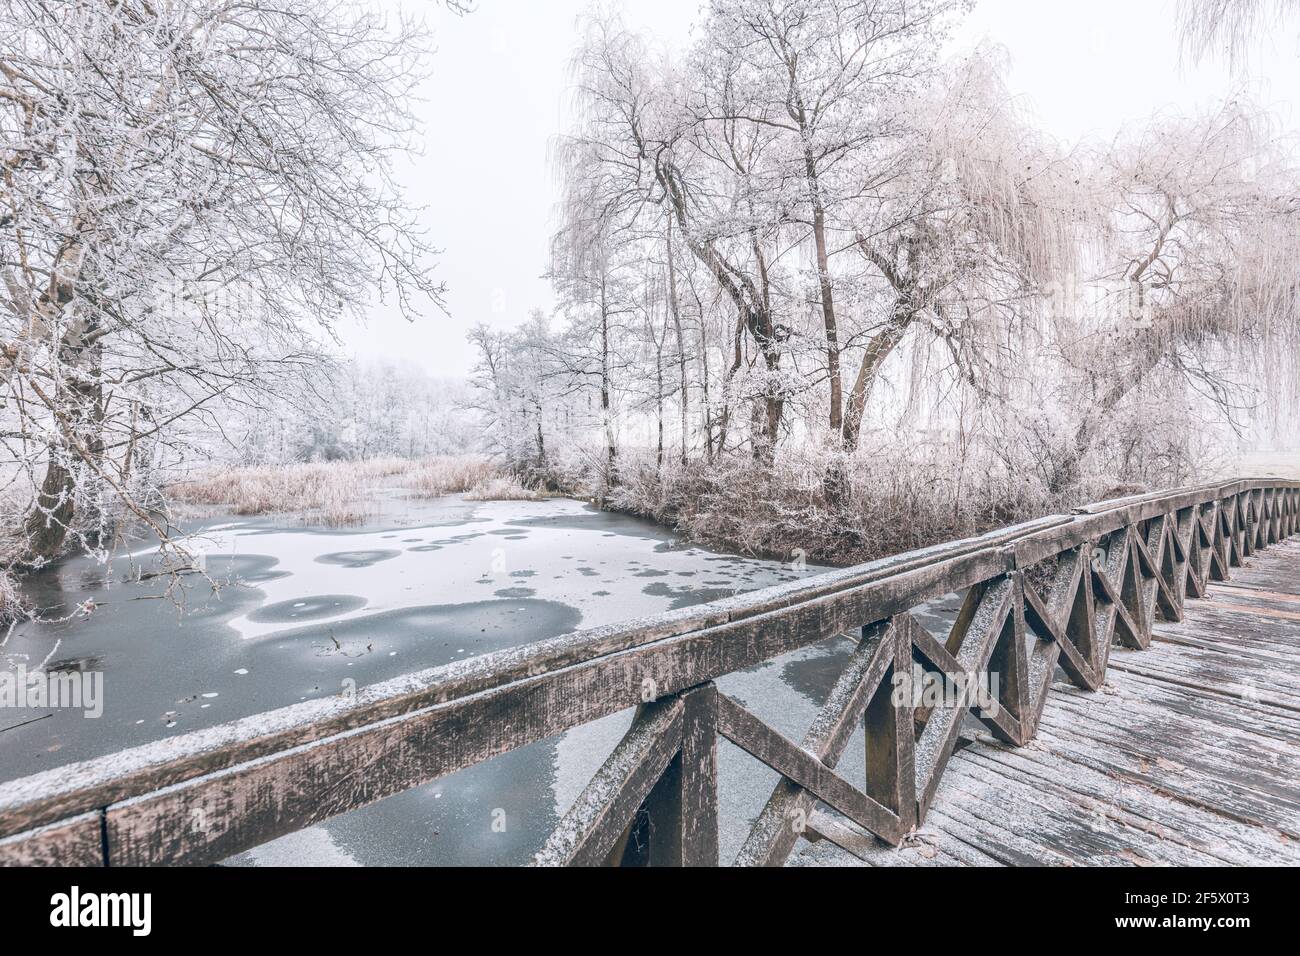 Pont en bois enneigé en hiver. Lac gelé et arbres enneigés, paysage hivernal idyllique. Paysage d'hiver, vue reposante et calme Banque D'Images